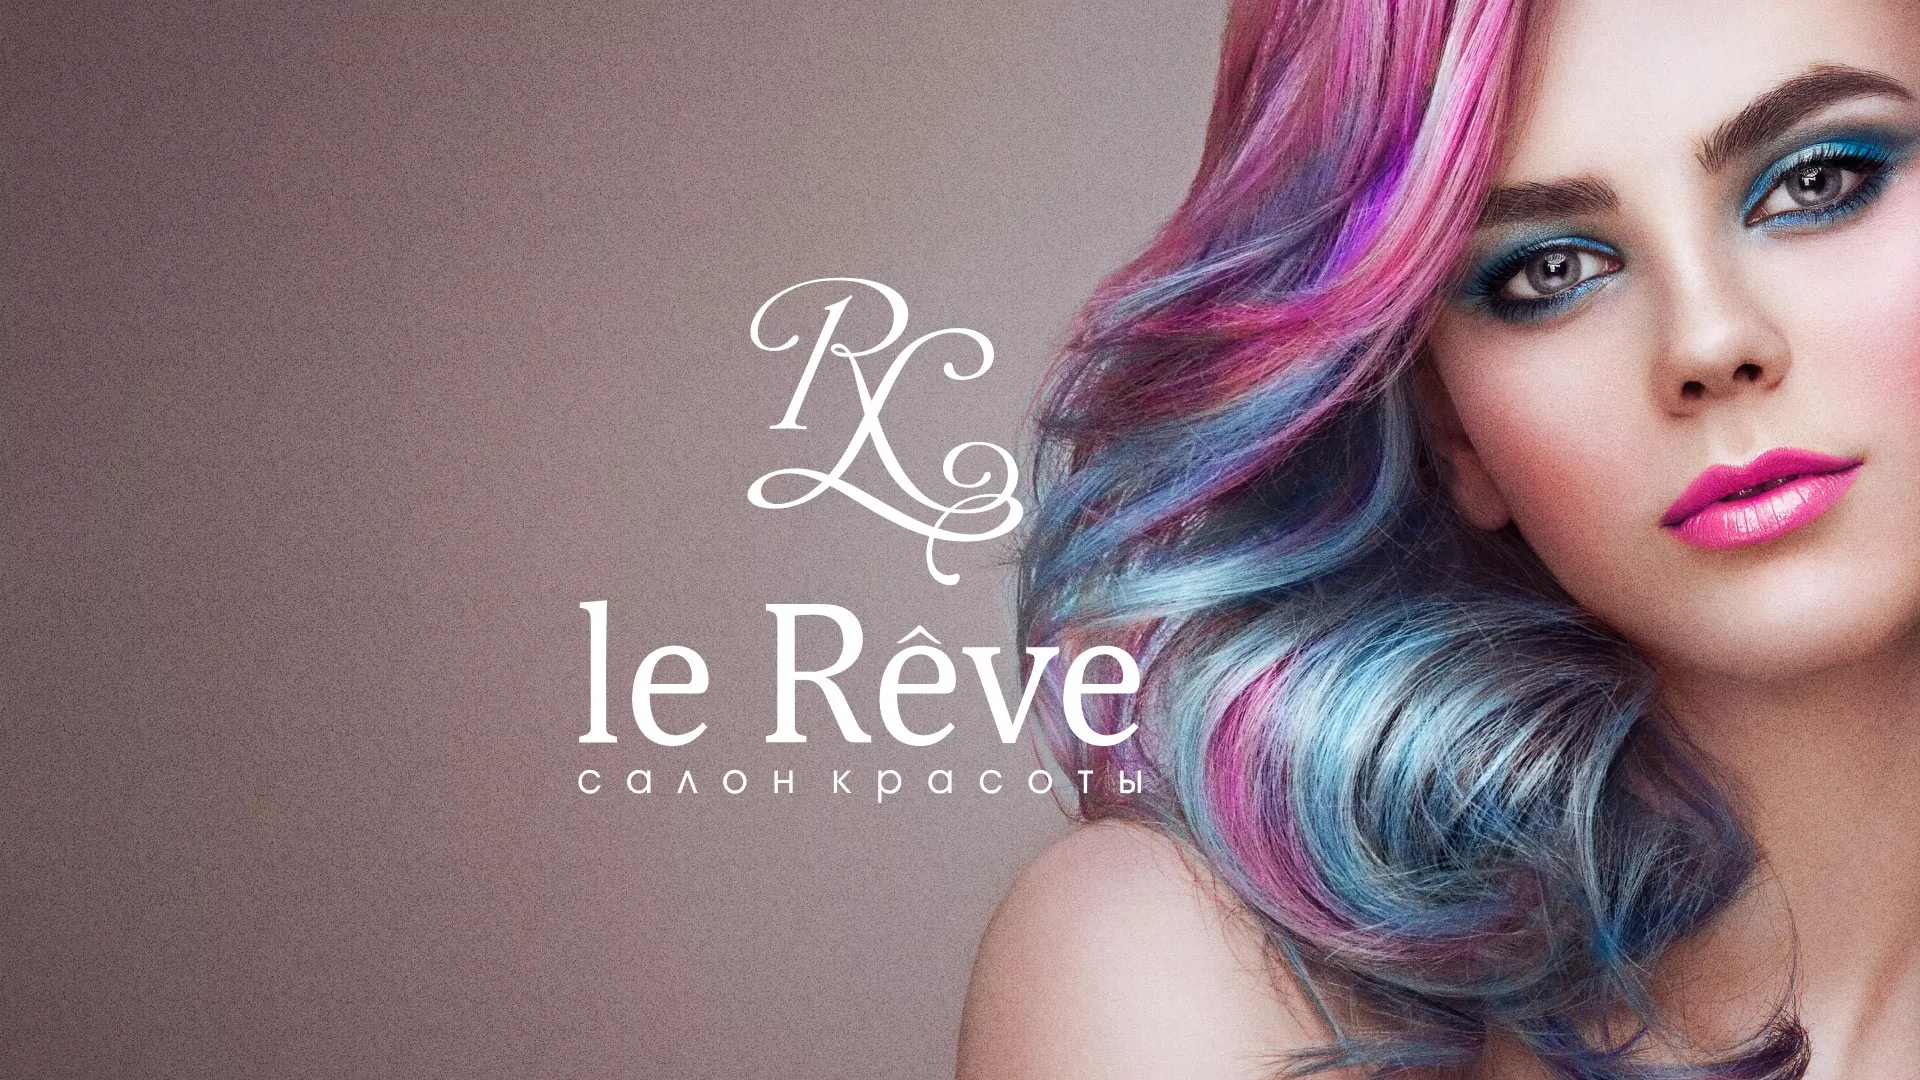 Создание сайта для салона красоты «Le Reve» в Бирюче